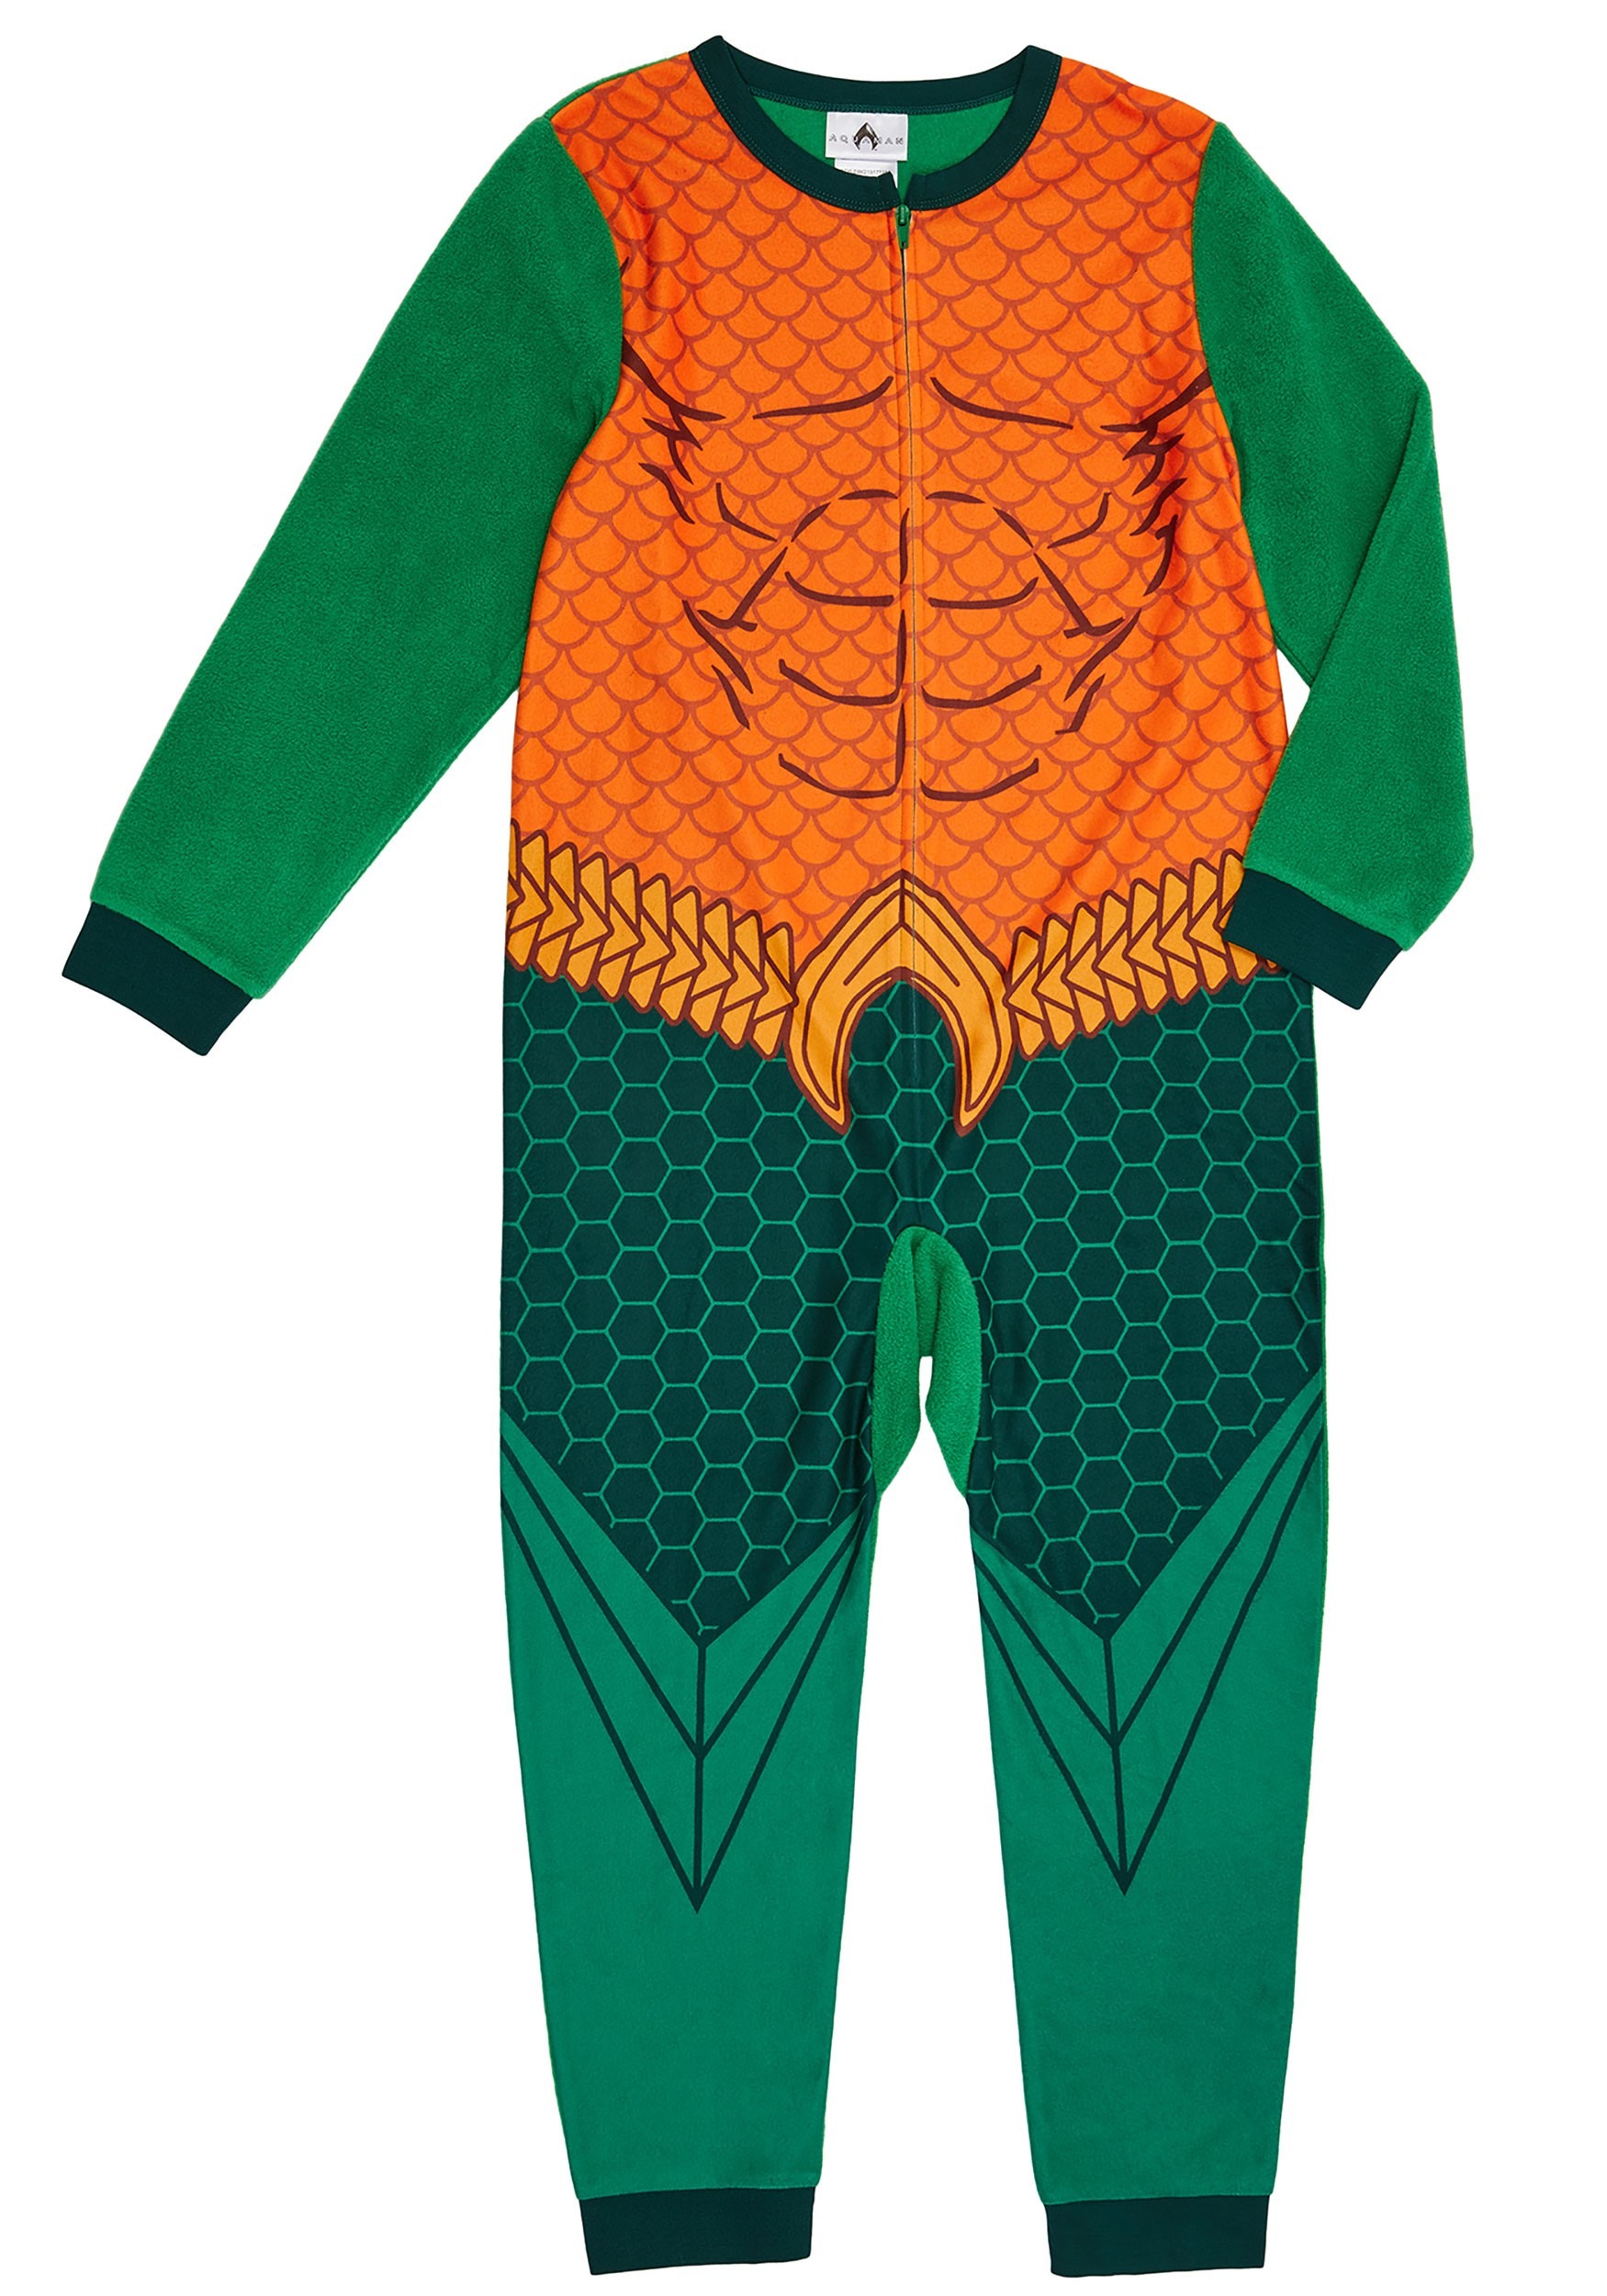 Aquaman Boys Union Suit